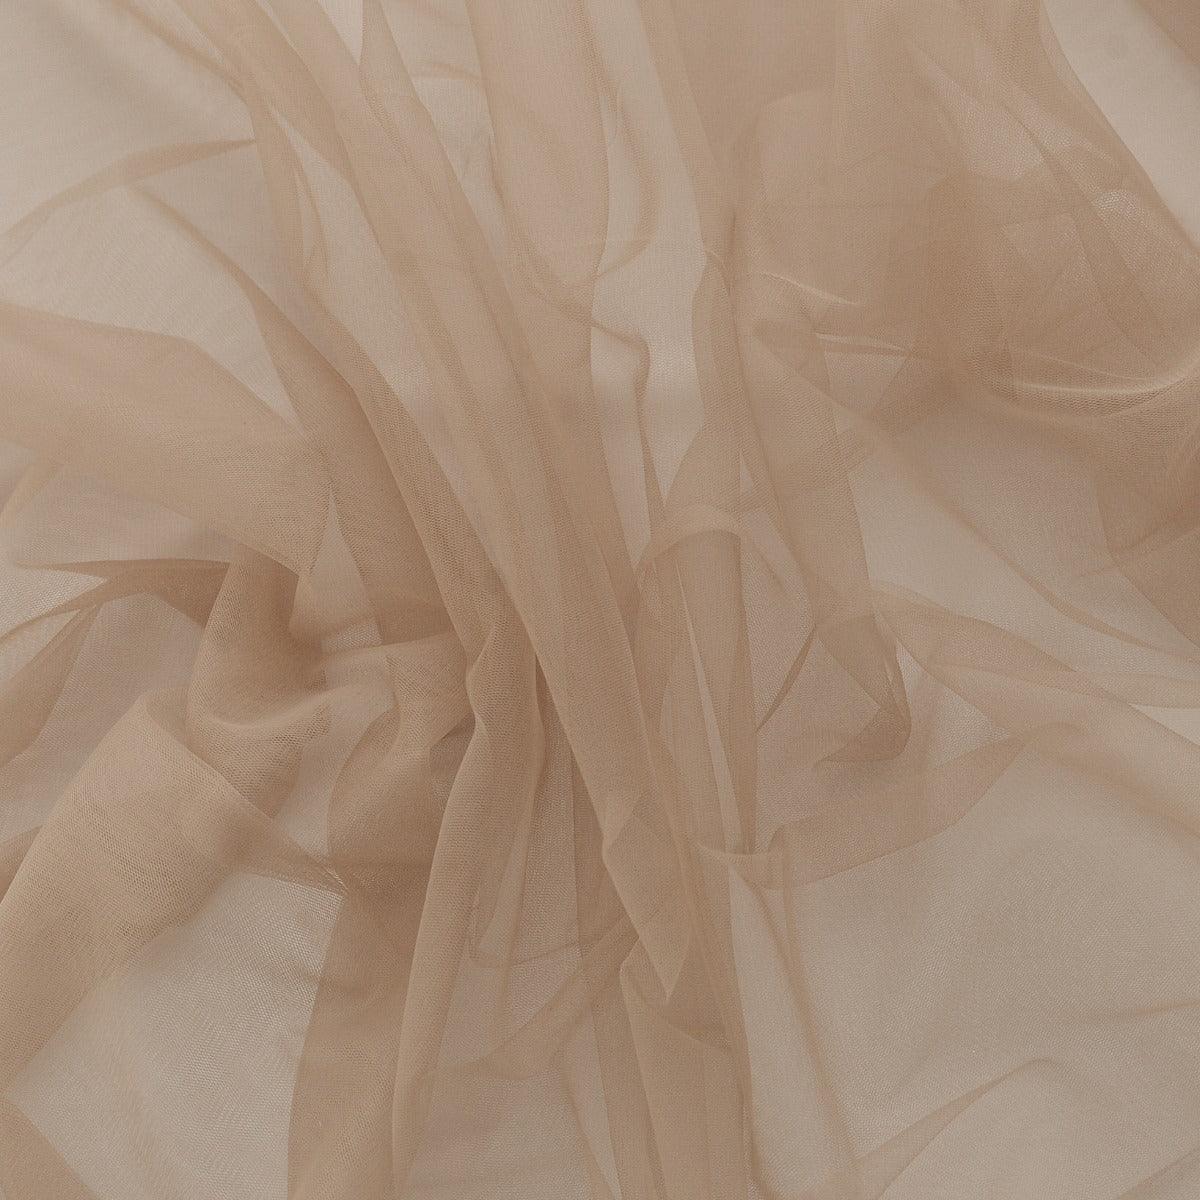 Tulle - Nude Inchis folosit la fabricarea rochiilor